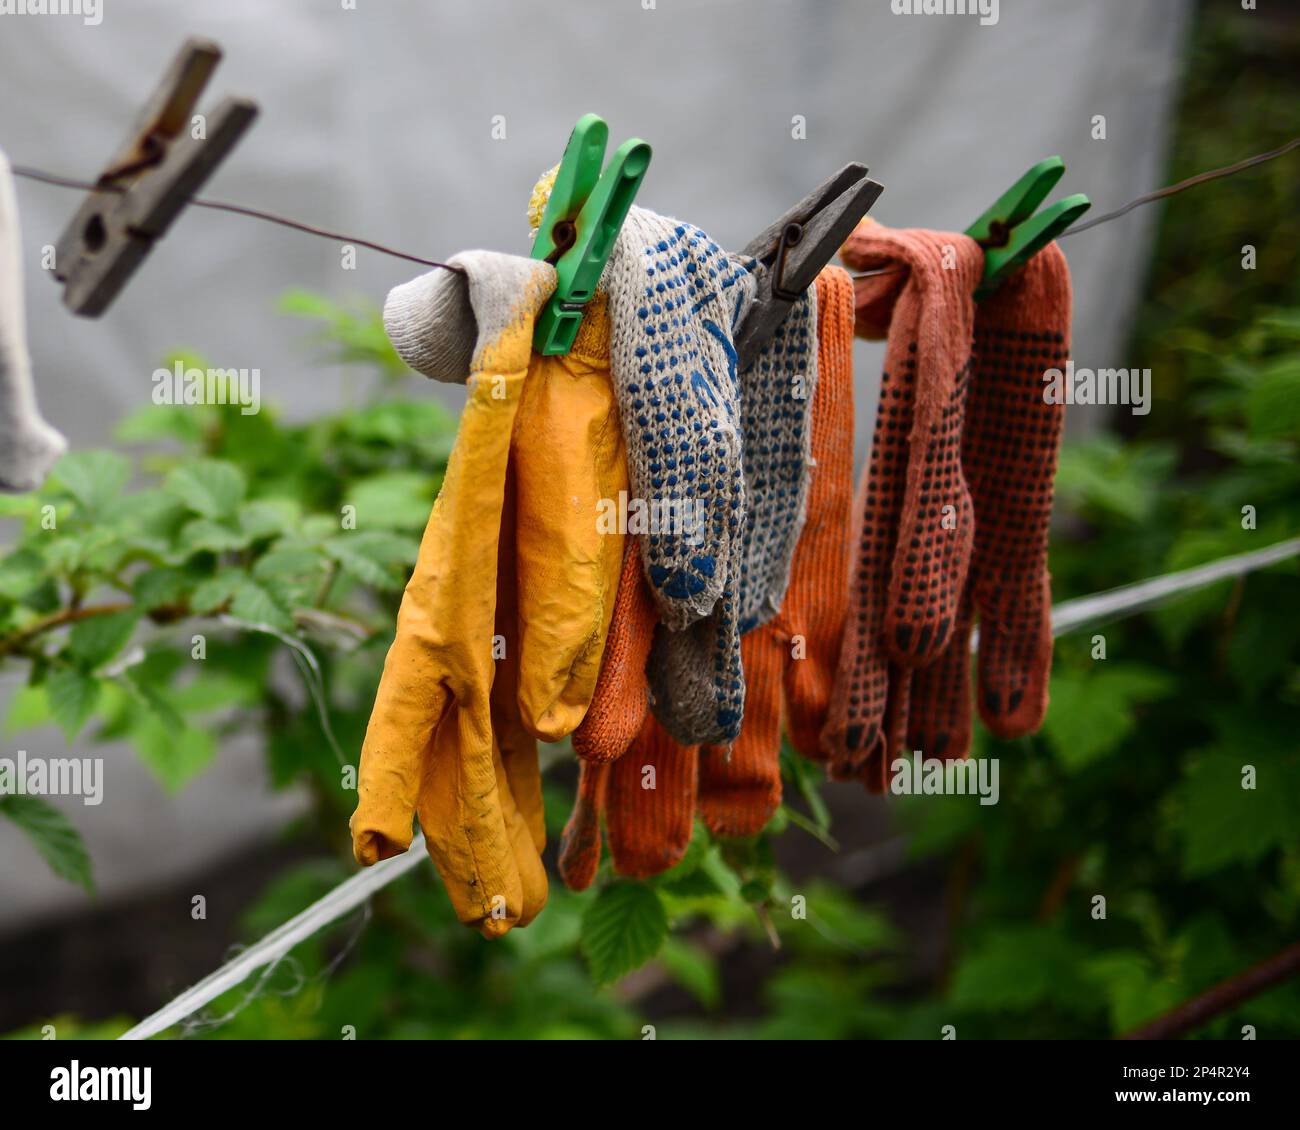 Les vieux gants de travail ont été lavés et suspendus pour sécher sur une corde. Banque D'Images